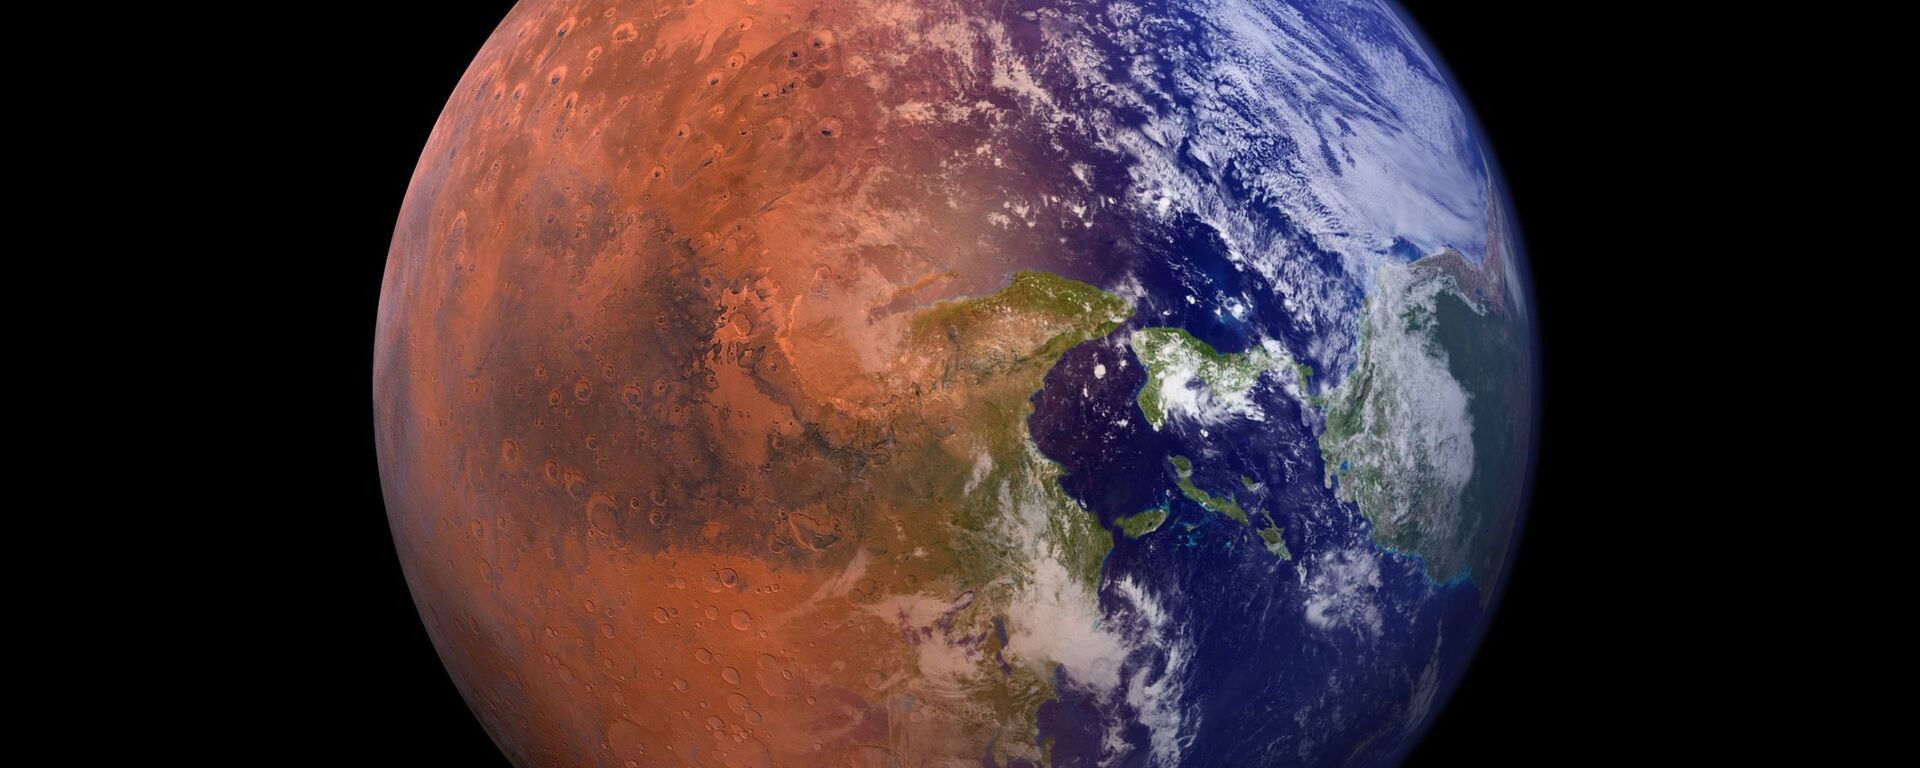 صورة خيالية تجمع كوكب الأرض مع نصف من كوكب المريخ  - سبوتنيك عربي, 1920, 16.01.2022